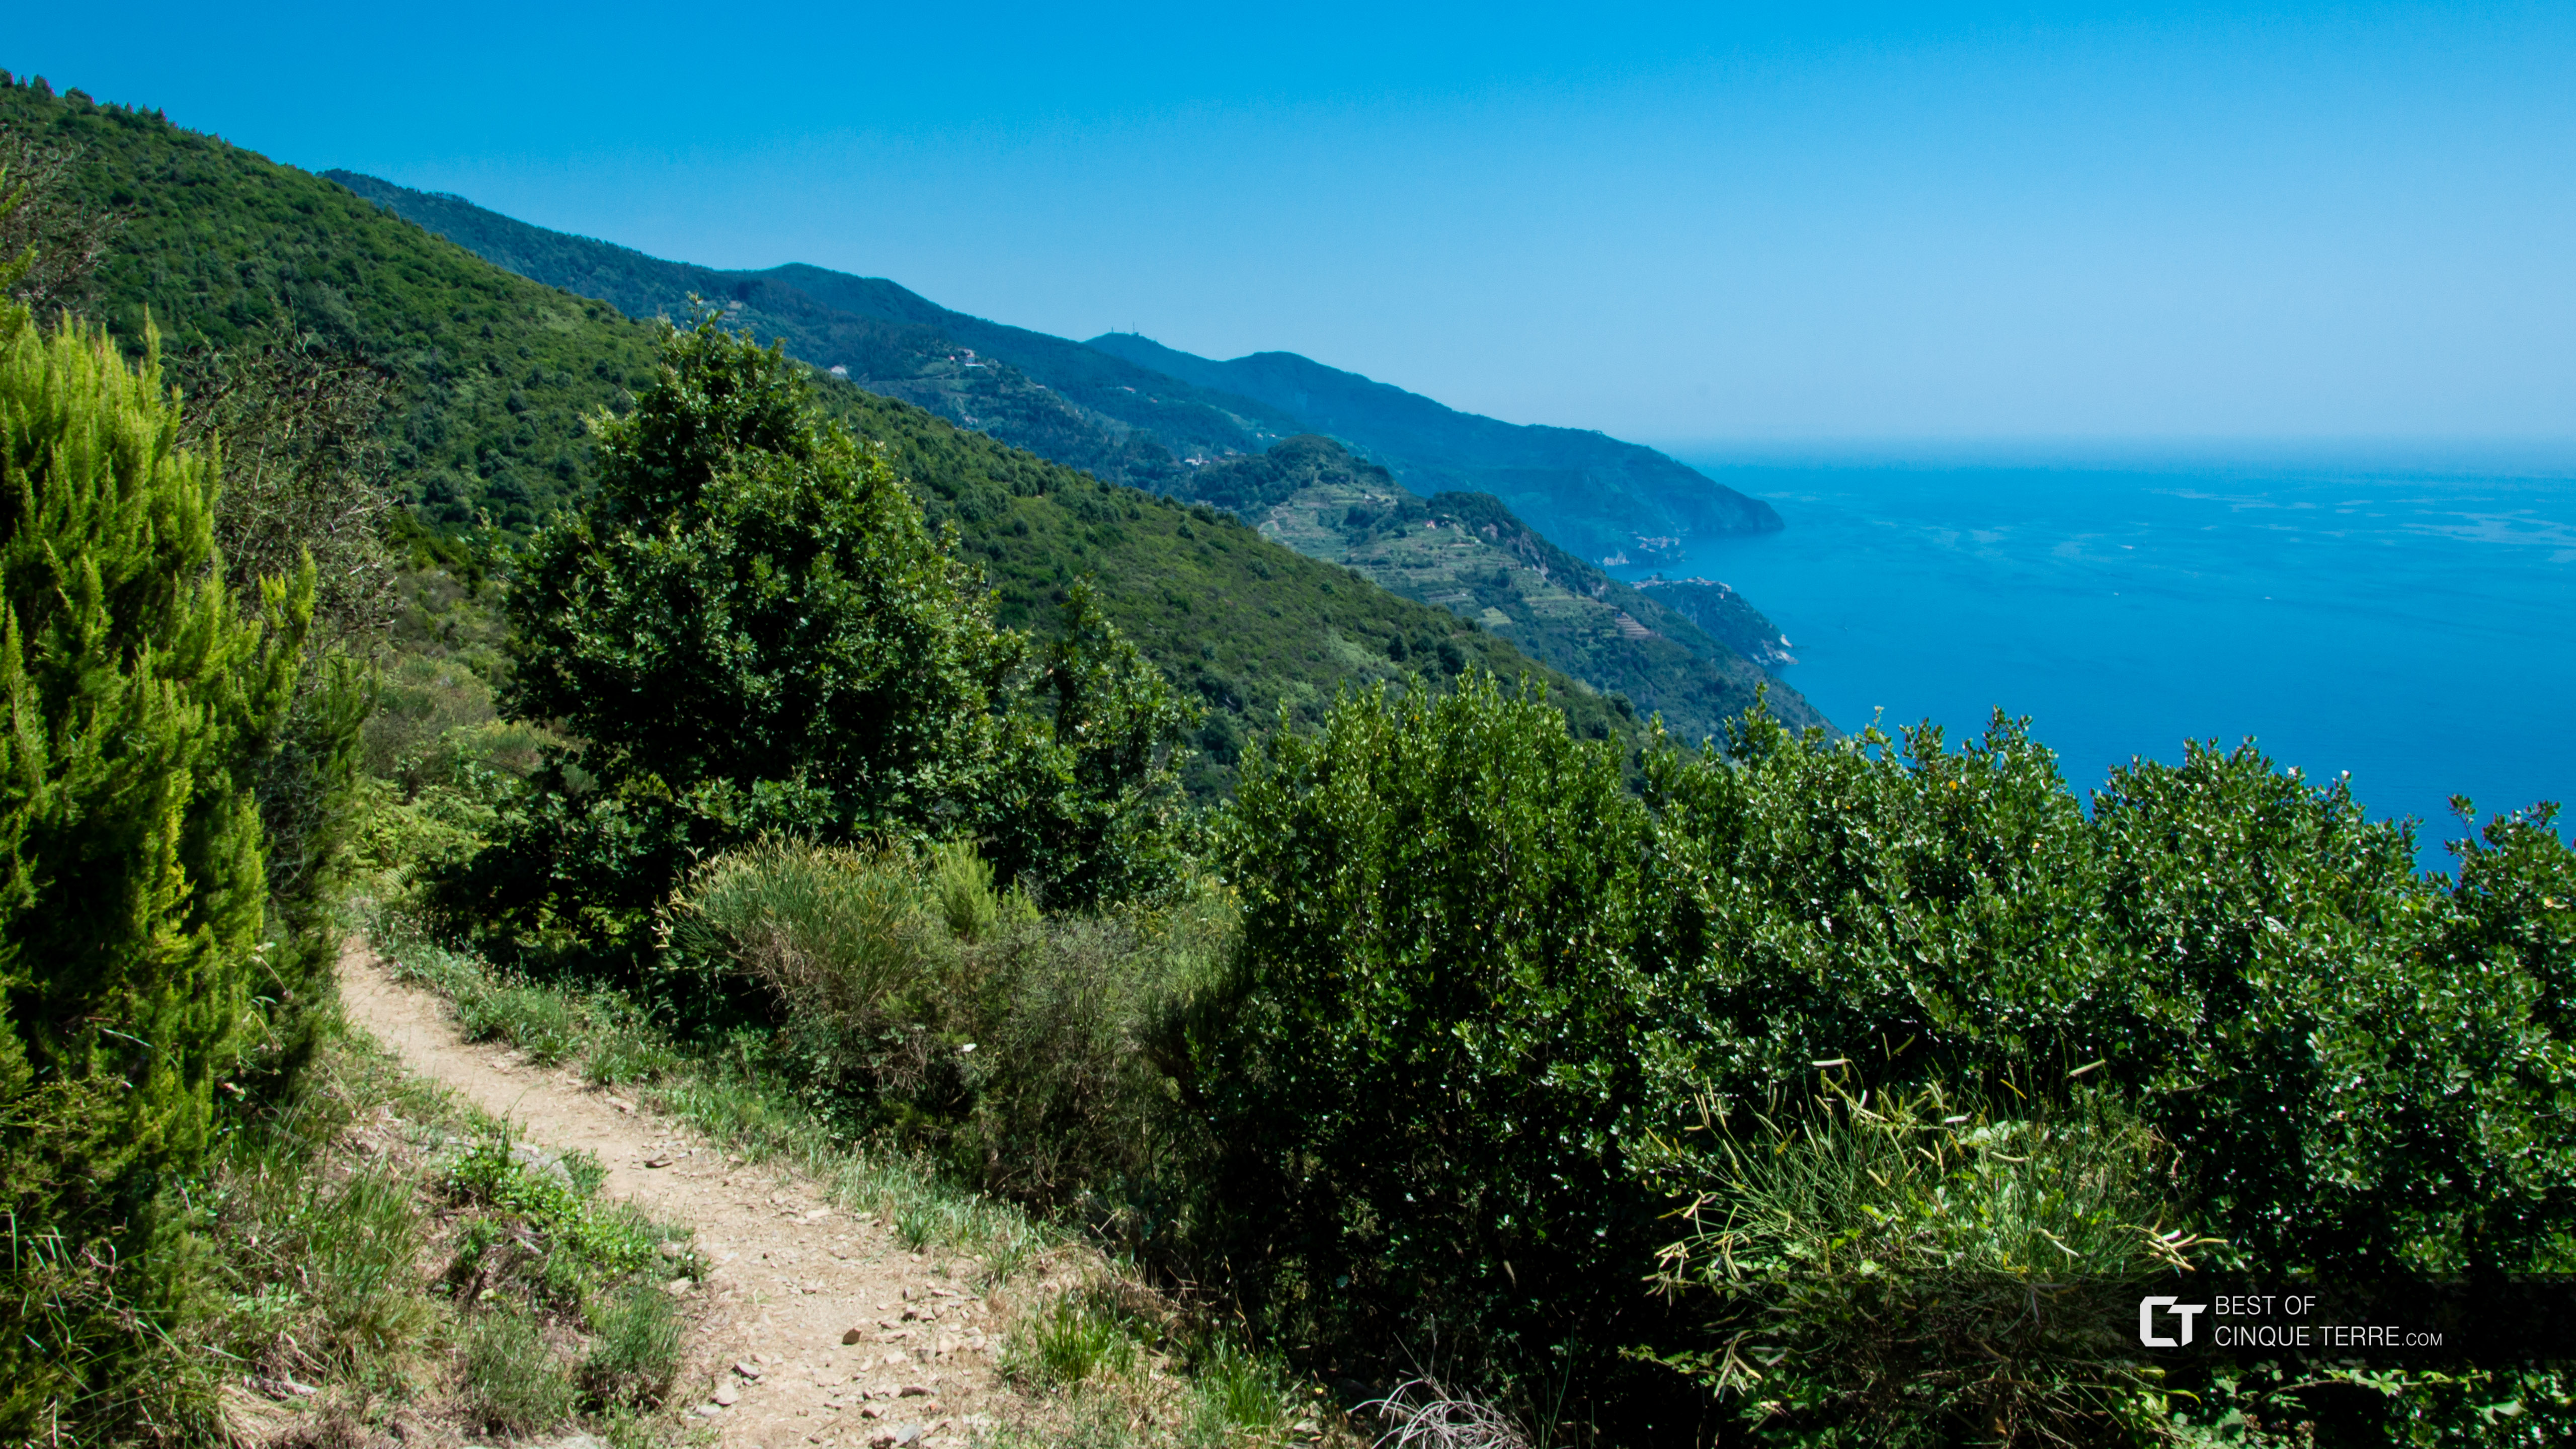 El recorrido largo desde Monterosso hacia Vernazza, Los senderos, Cinque Terre, Italia